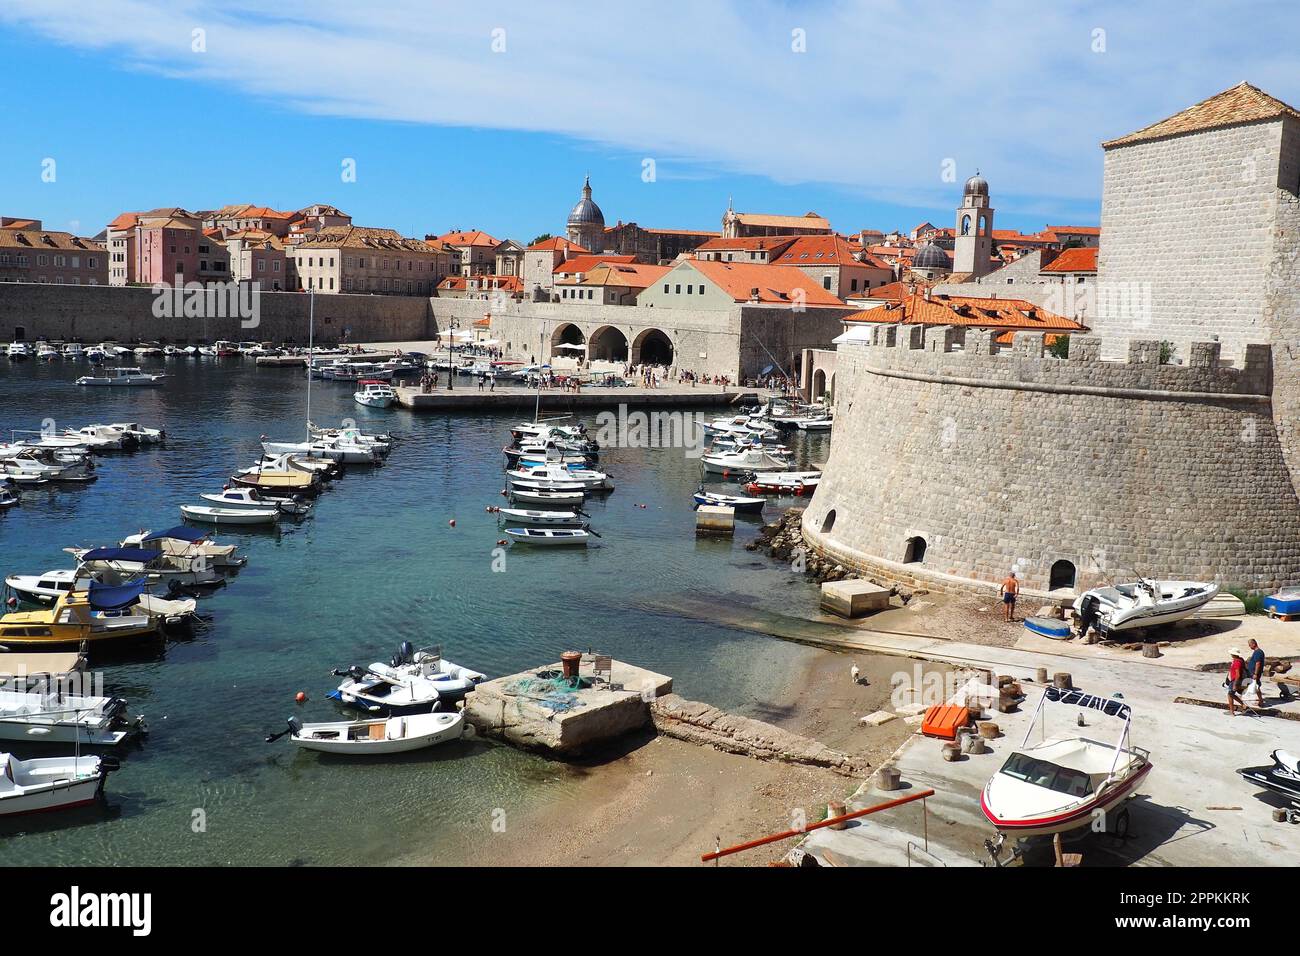 Dubrovnik, Croatie, 14 août 2022. Port de ville en été, attraction touristique. Les touristes marchent, montent dans les bateaux et les bateaux et font des excursions en bateau. Mer Adriatique. Un résident local joue avec un chien. Vieux forts. Banque D'Images